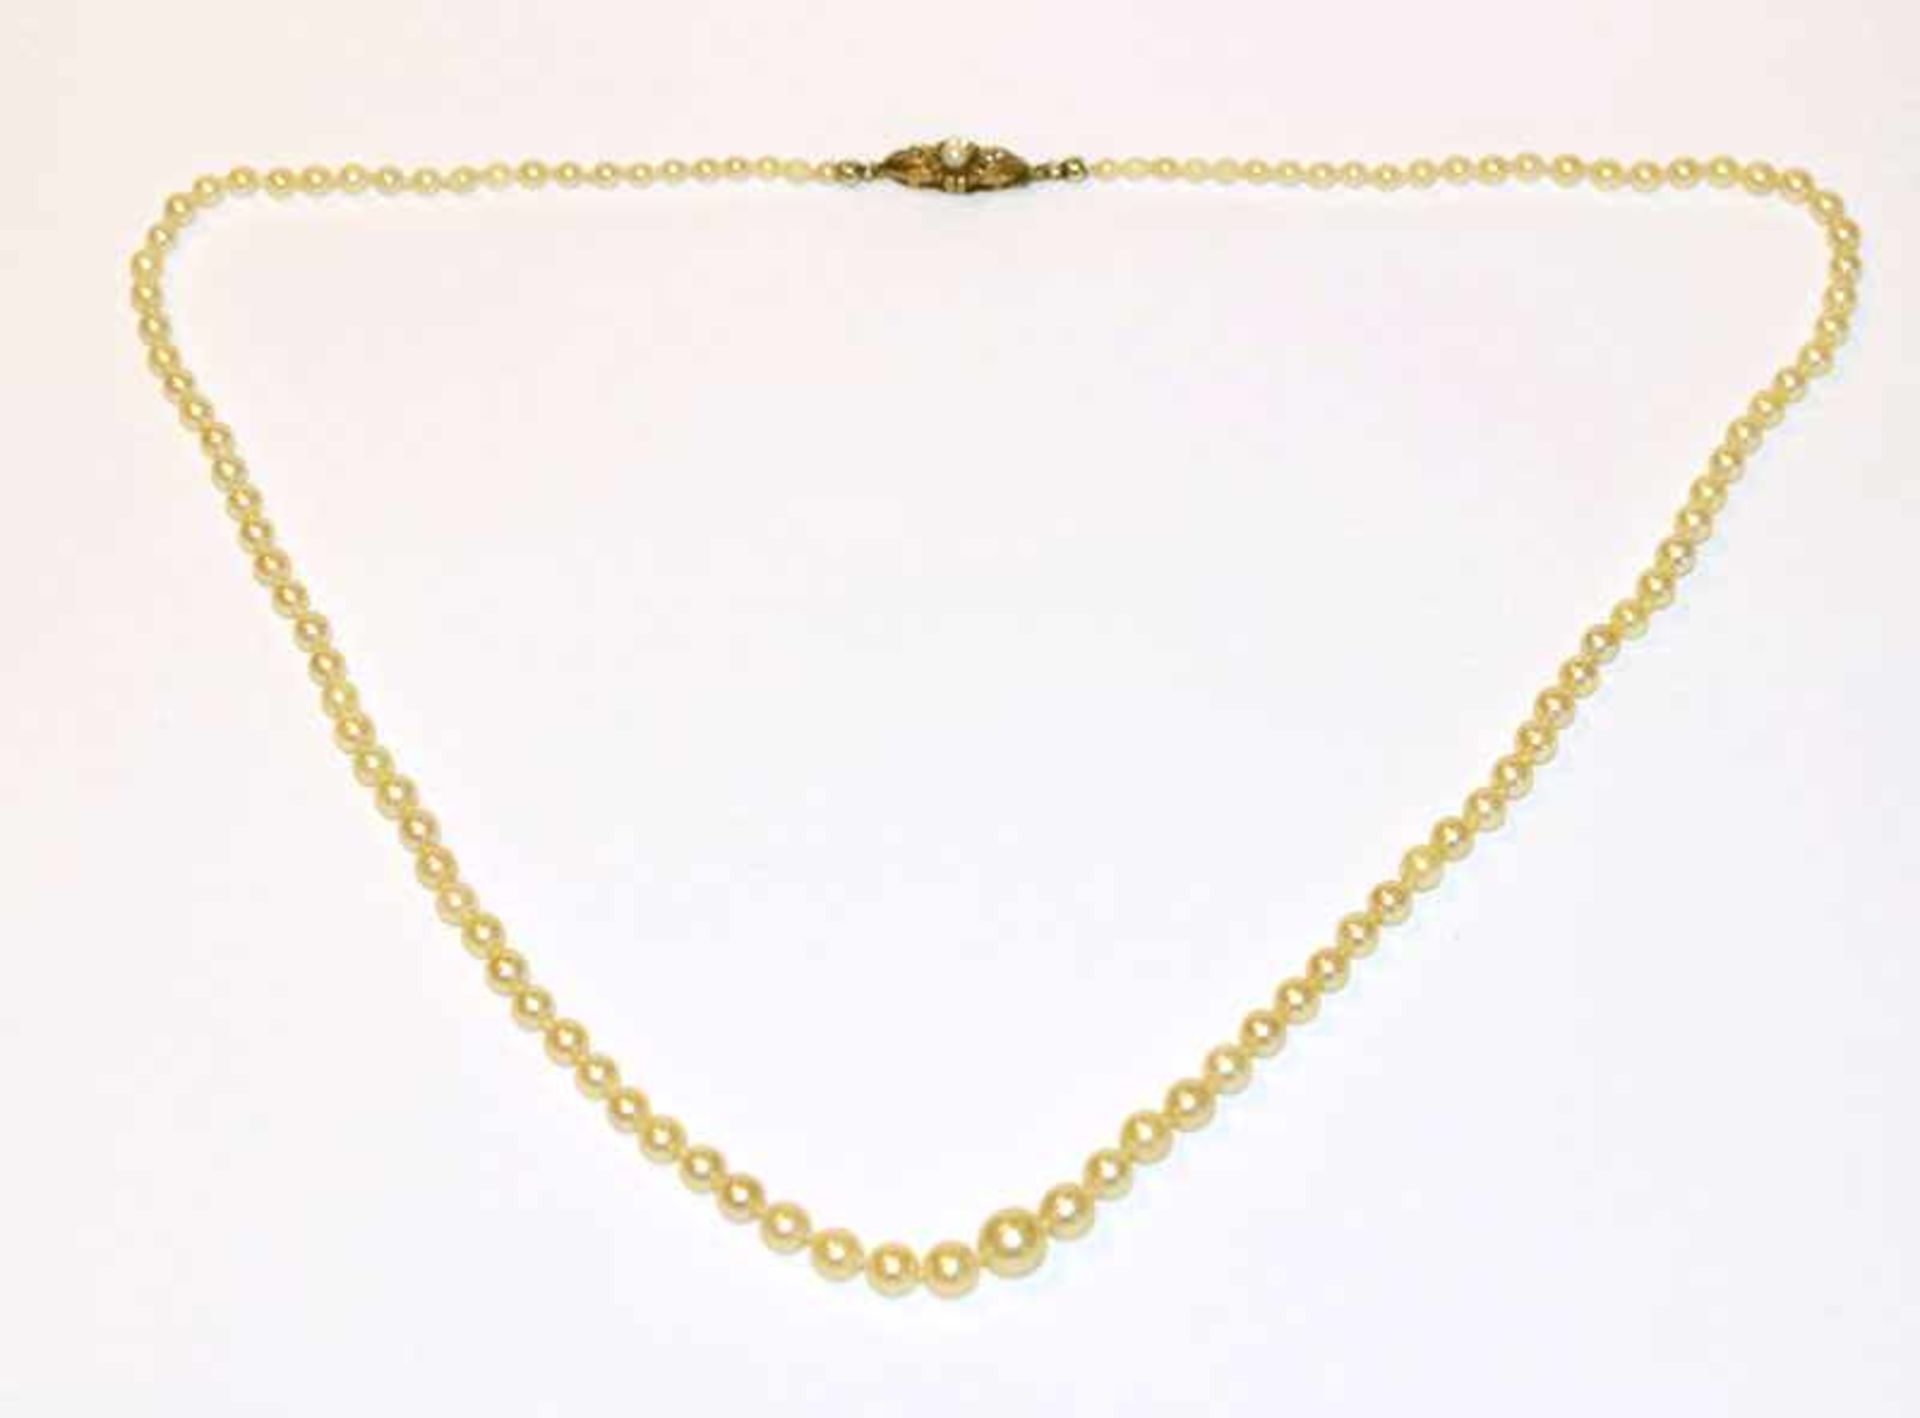 Opern-Perlenkette in Verlaufform mit 8 k Gelbgold Schließe, um 1920, L 52 cm, Tragespuren